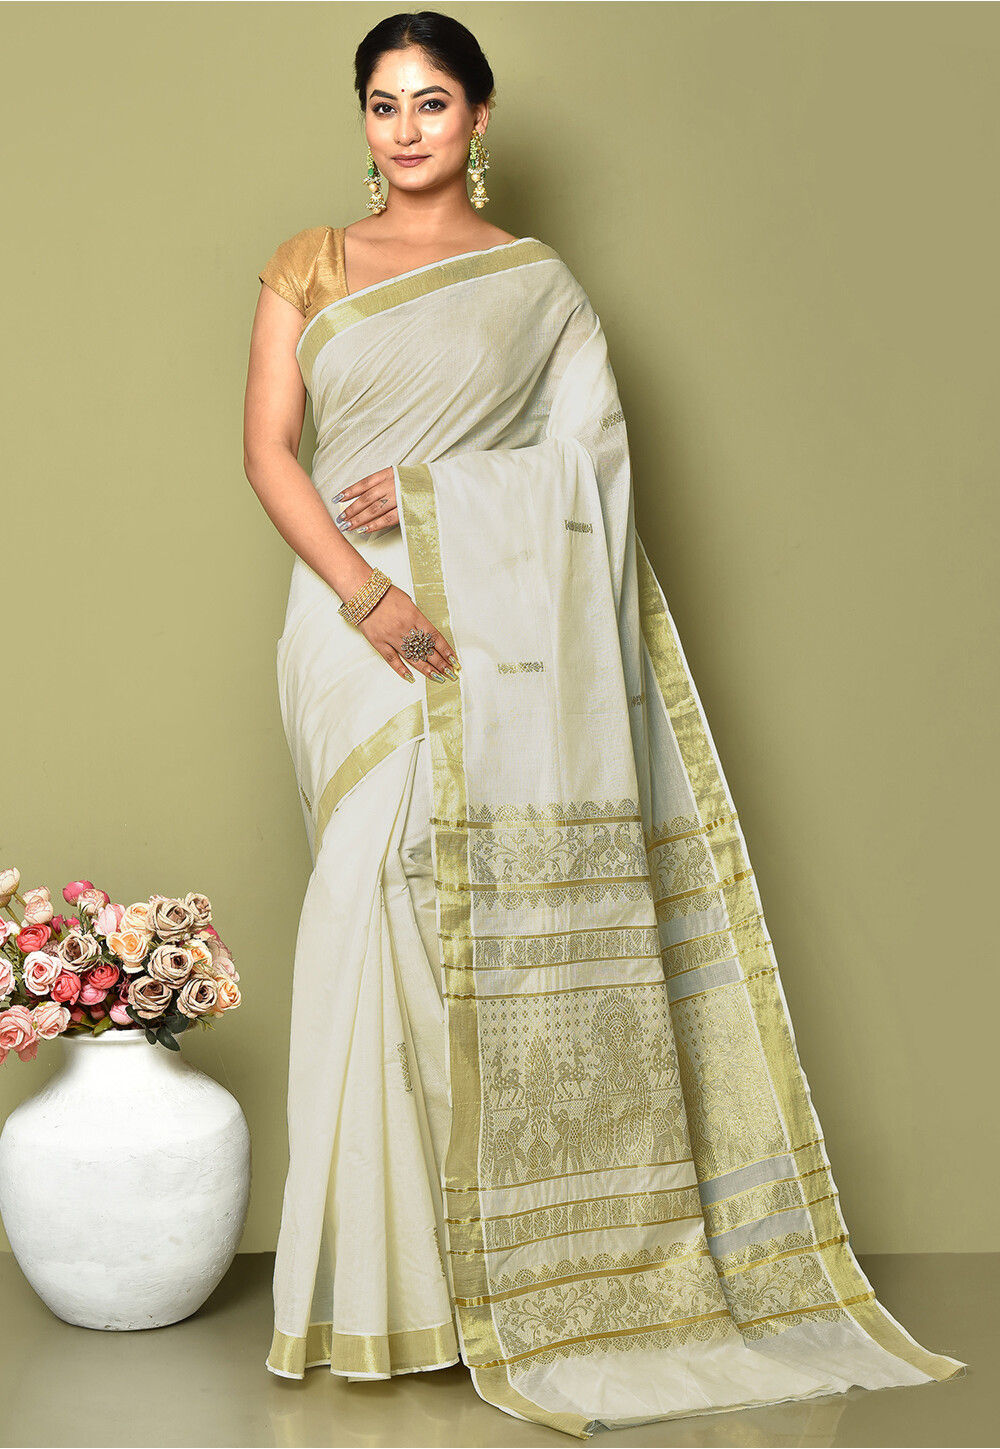 15 Gorgeous Kerala Saree Blouse Designs To Try...